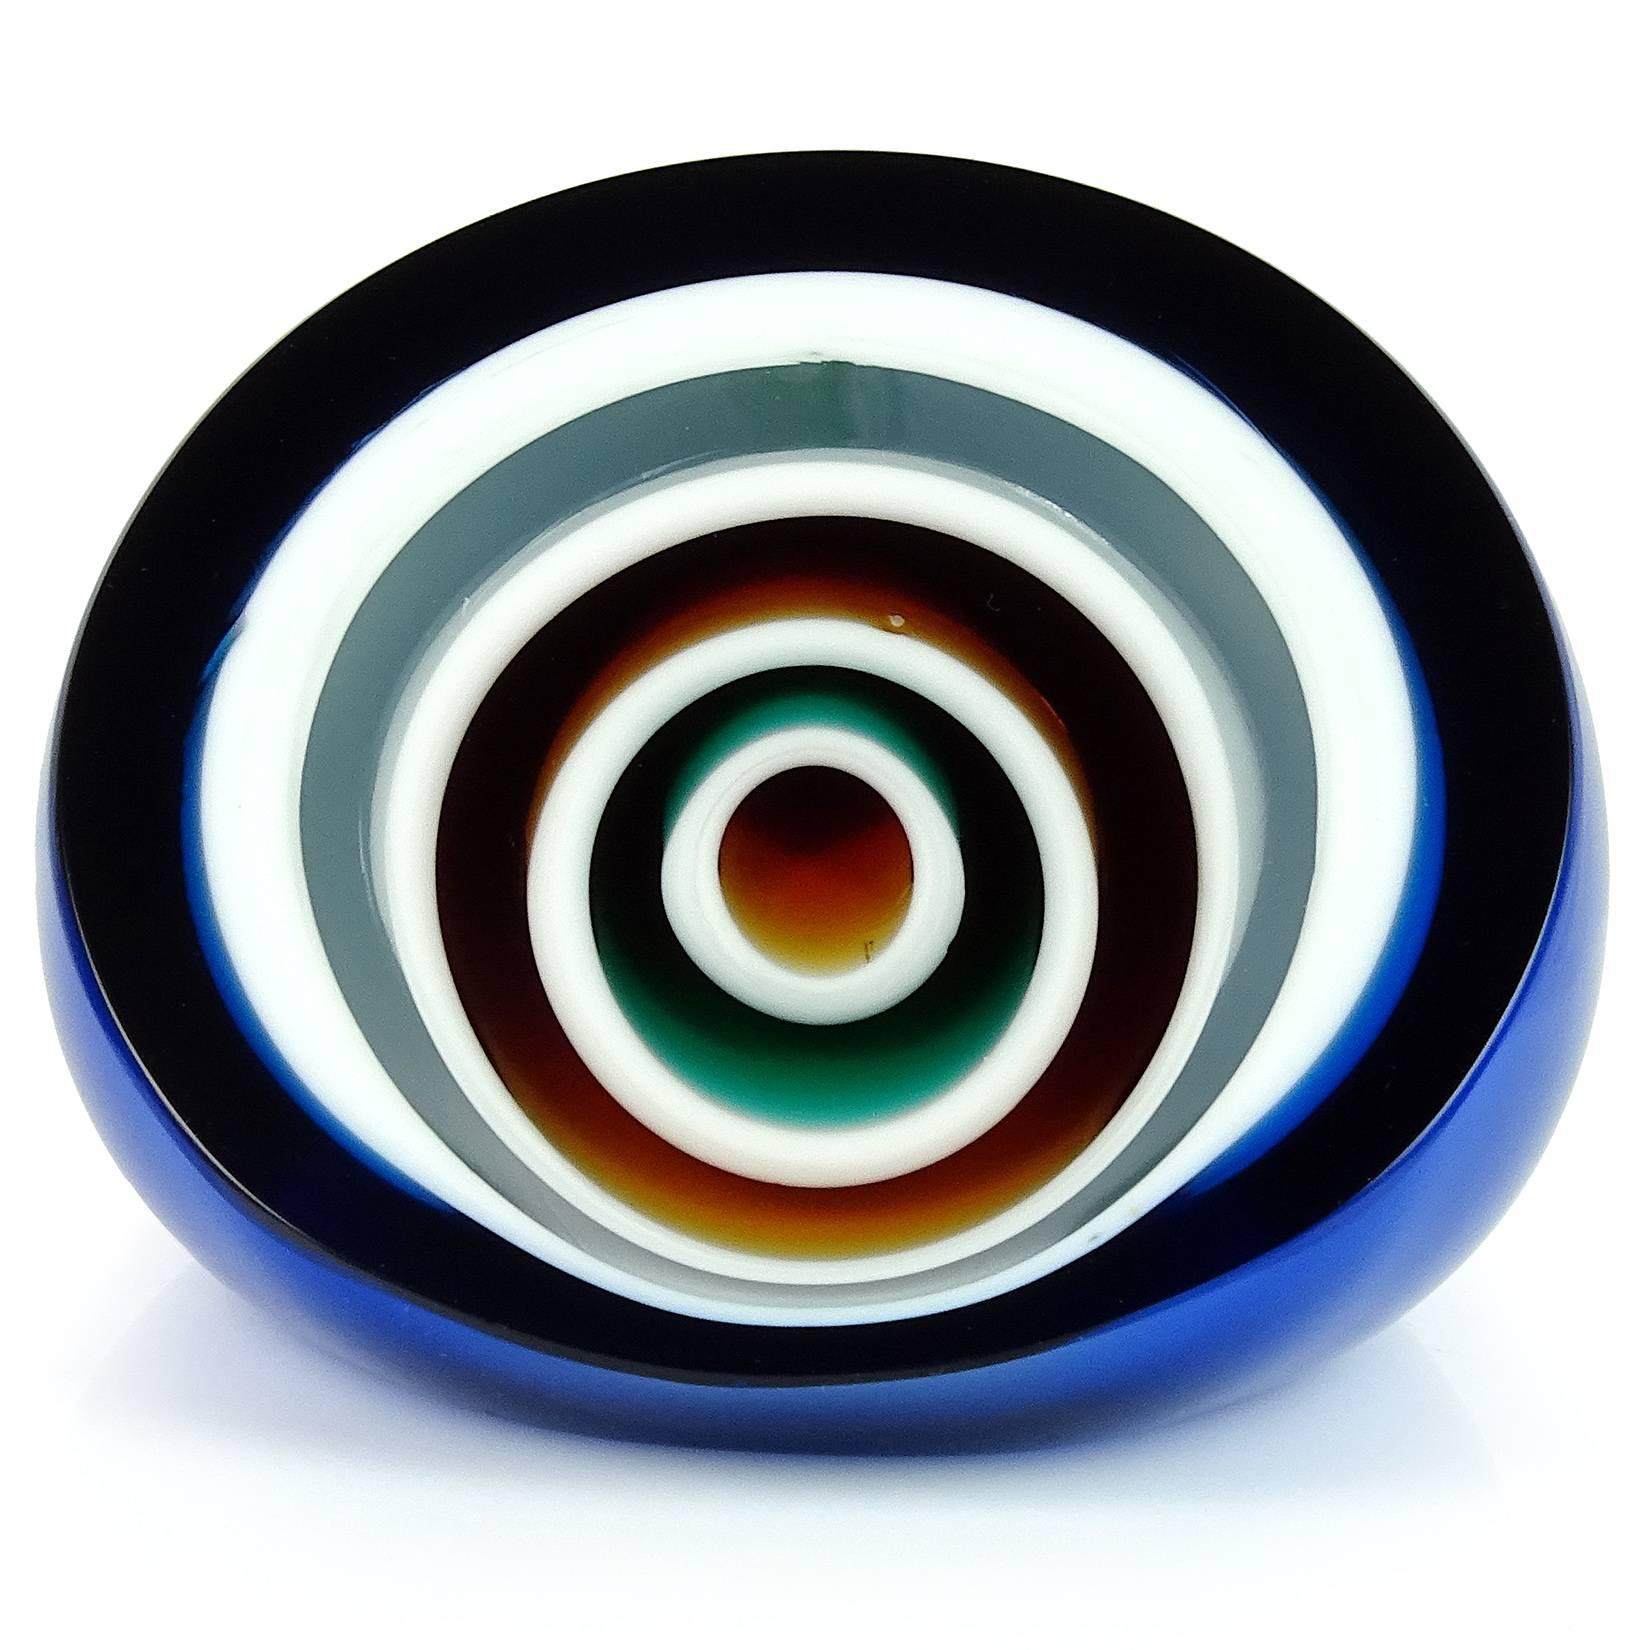 Space Age Vistosi Murano Blue White Orange Black Bullseye Italian Art Glass Paperweight